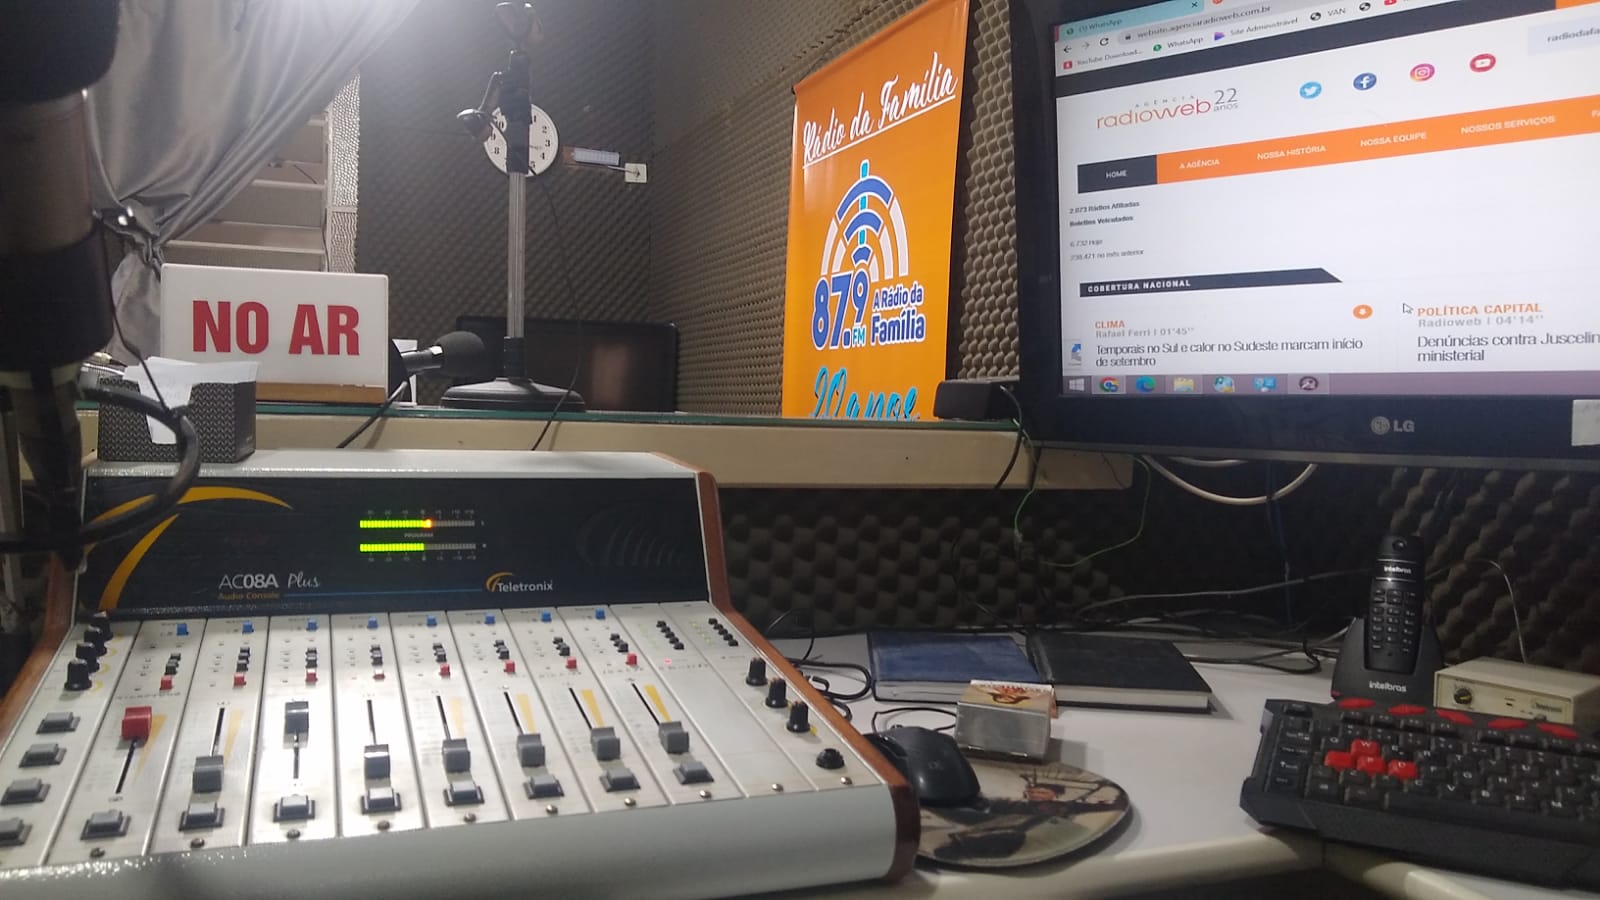 Rádio da Família 87,9 FM - Tubarão.SC